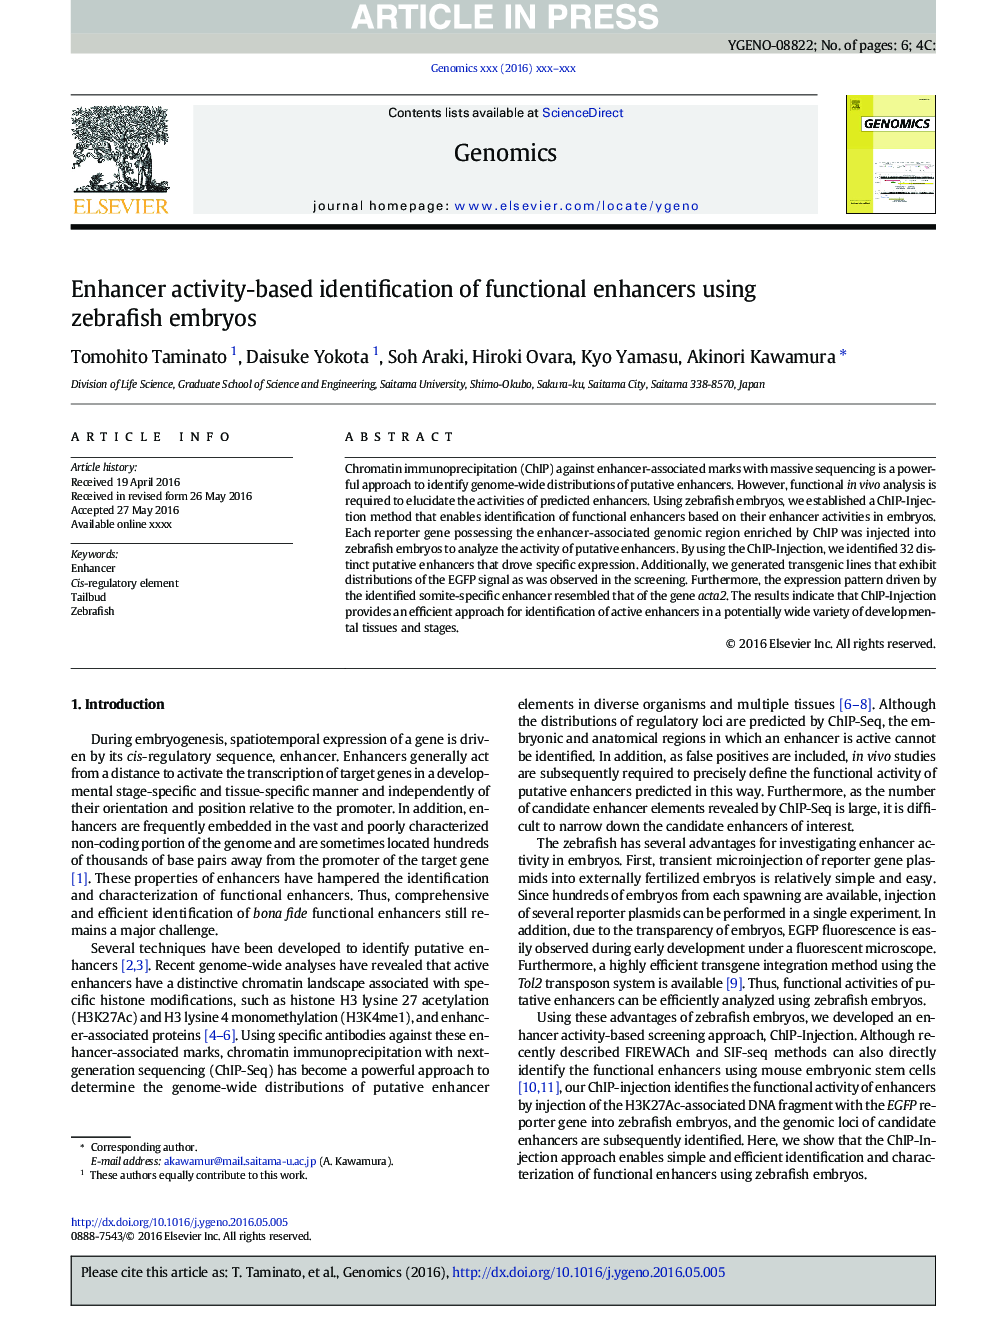 Enhancer activity-based identification of functional enhancers using zebrafish embryos